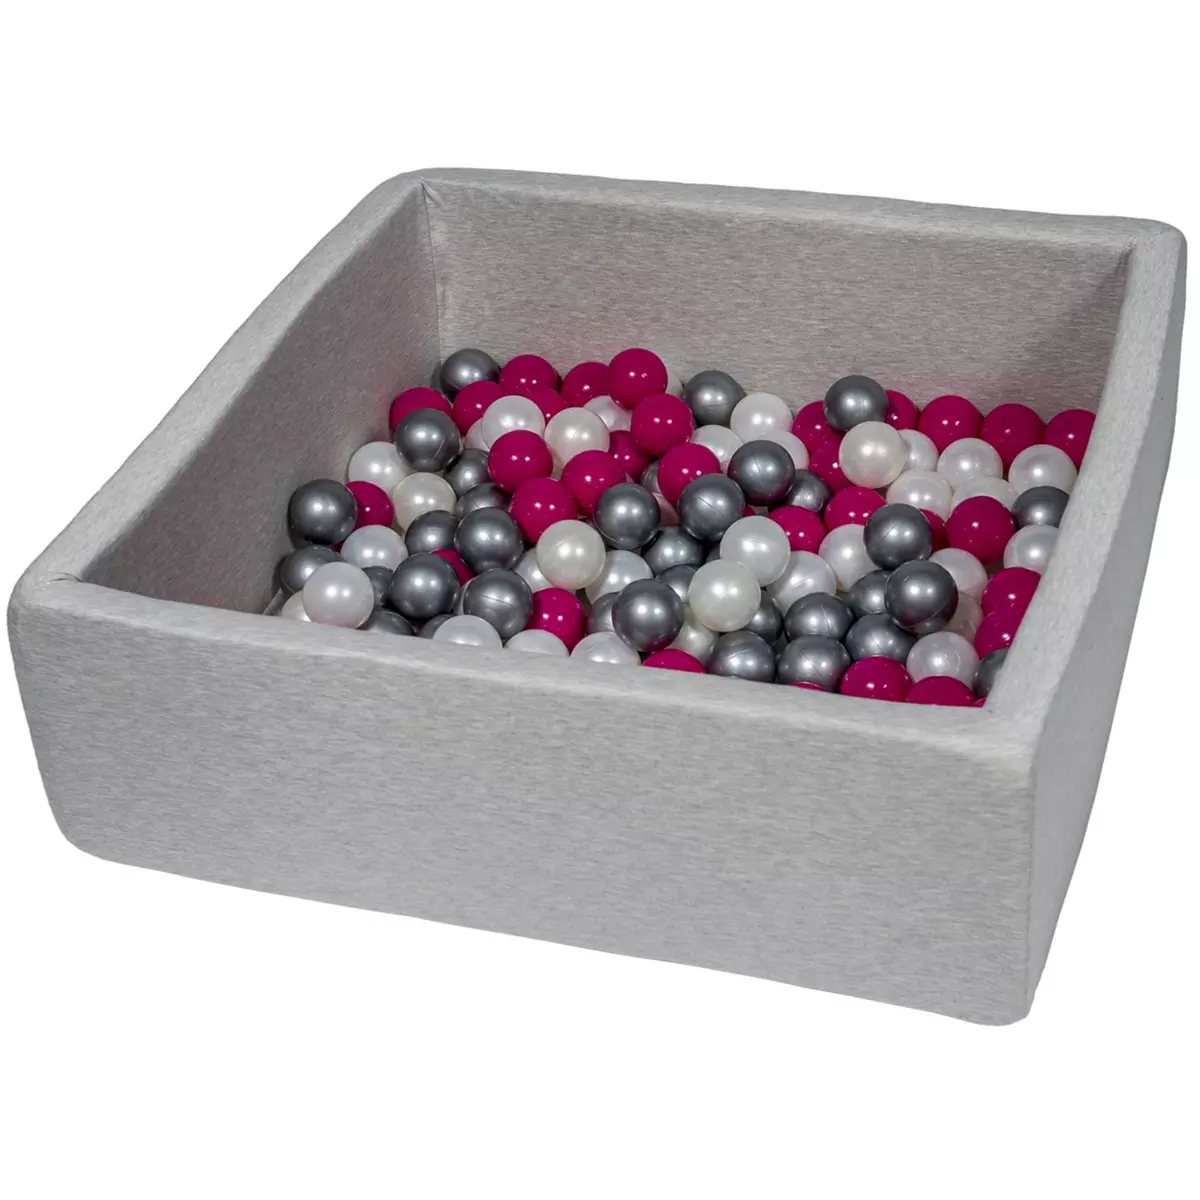  Piscine à balles pour enfant,  90x90 cm, Aire de jeu + 150 balles perle, rose, argent